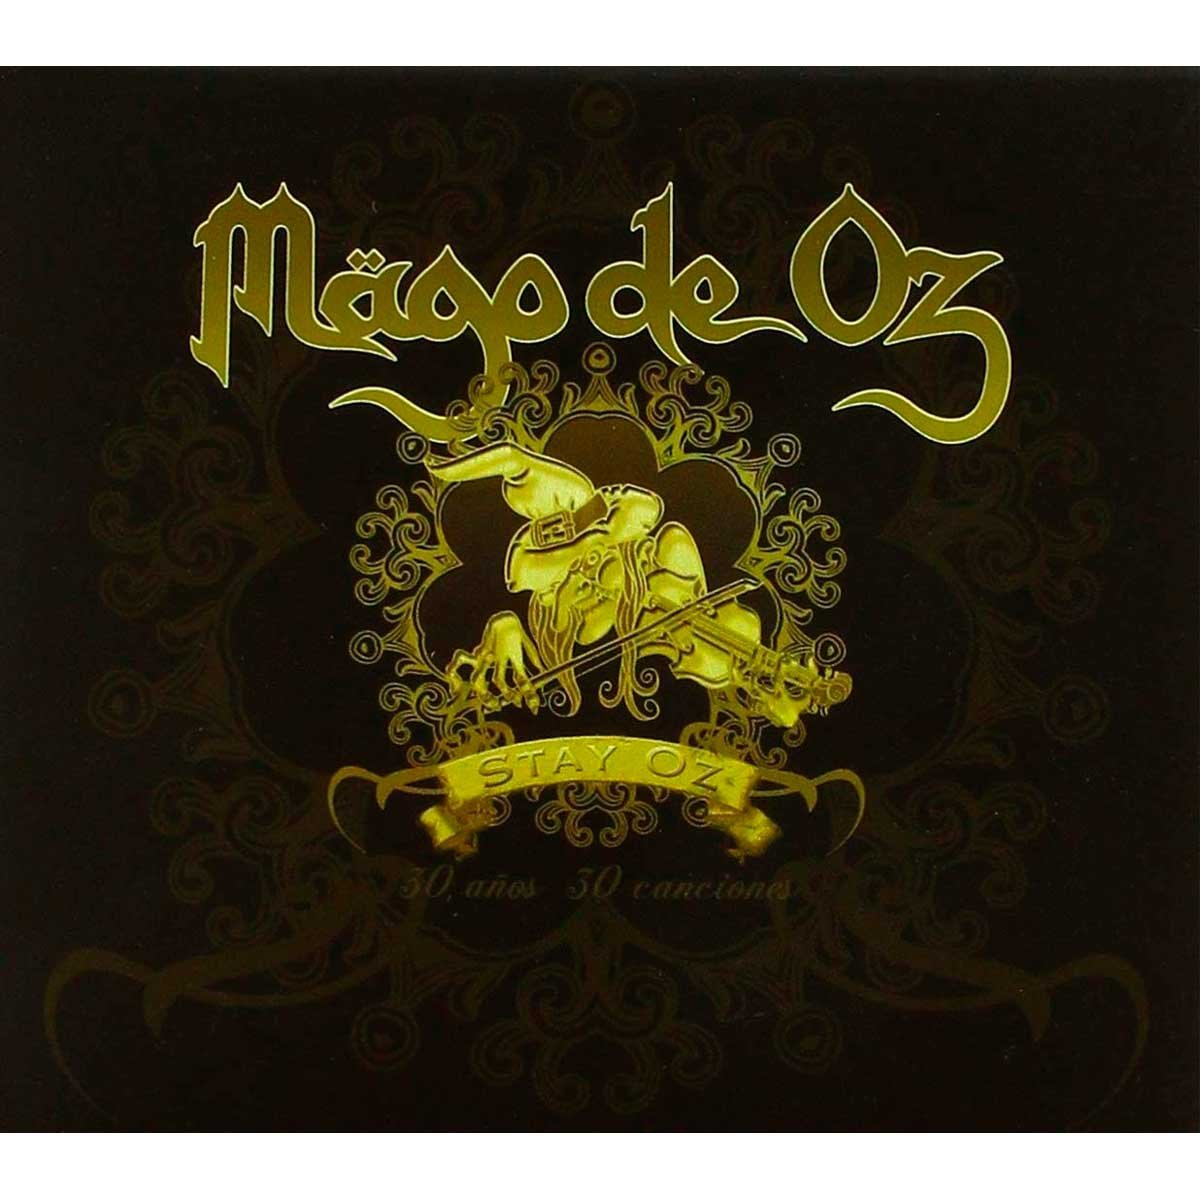 2 Cds Mägo de Oz - 30 Años 30 Canciones